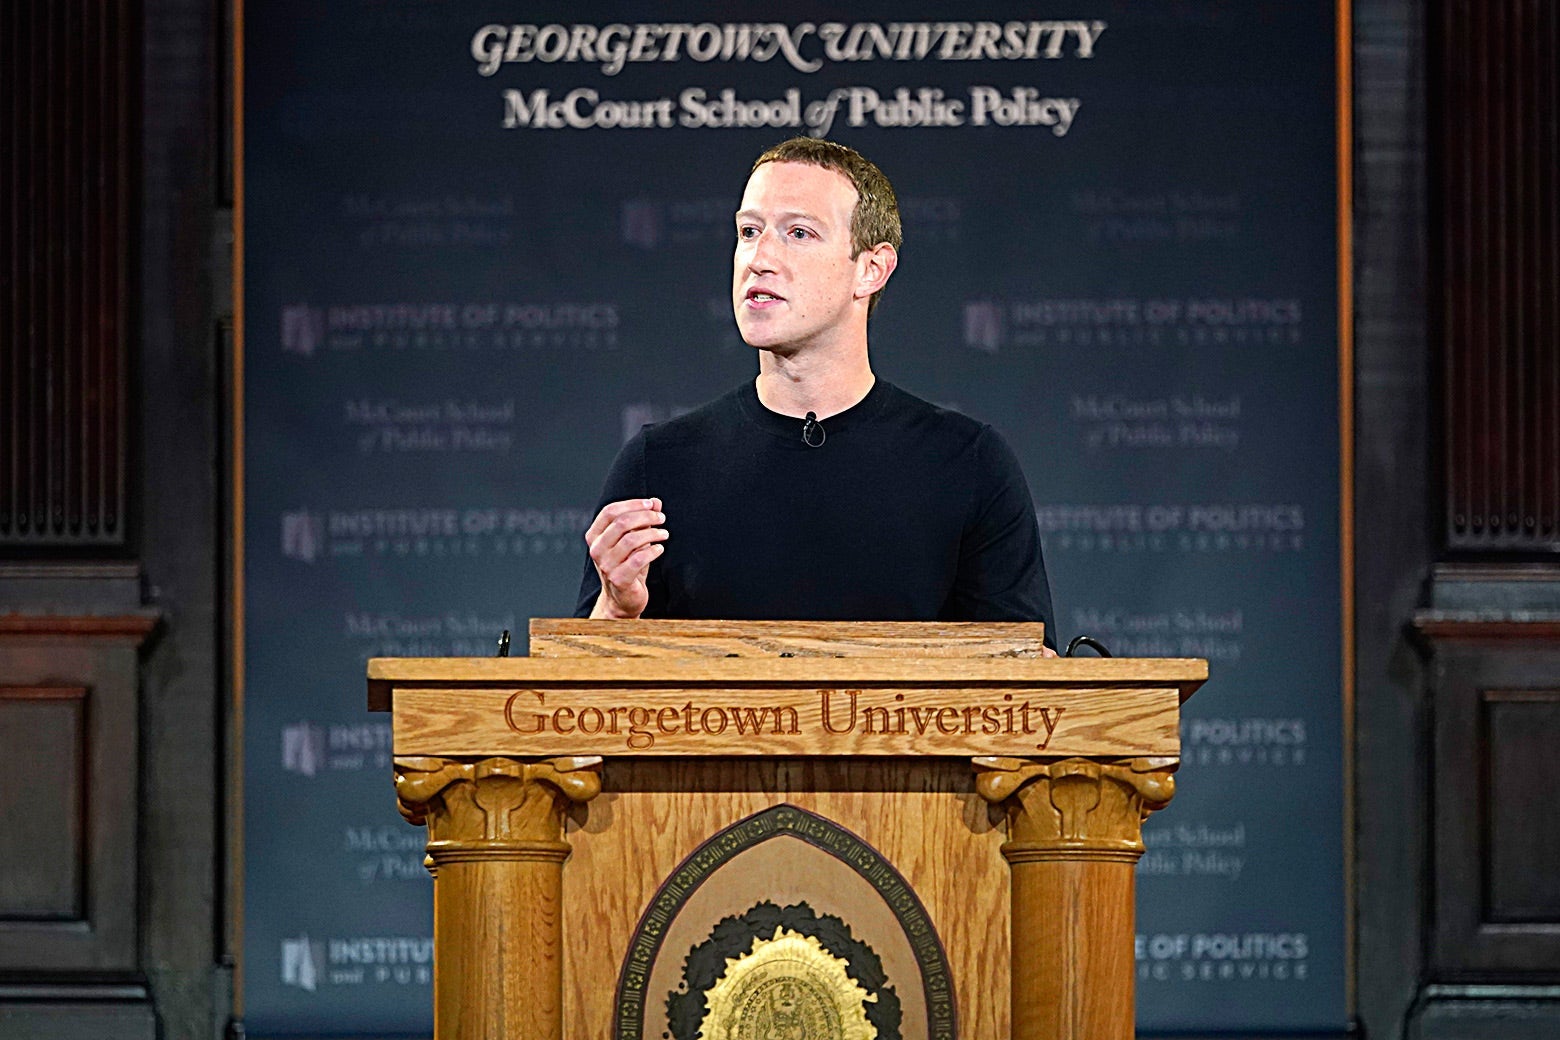 Mark Zuckerberg gives a speech about free speech.